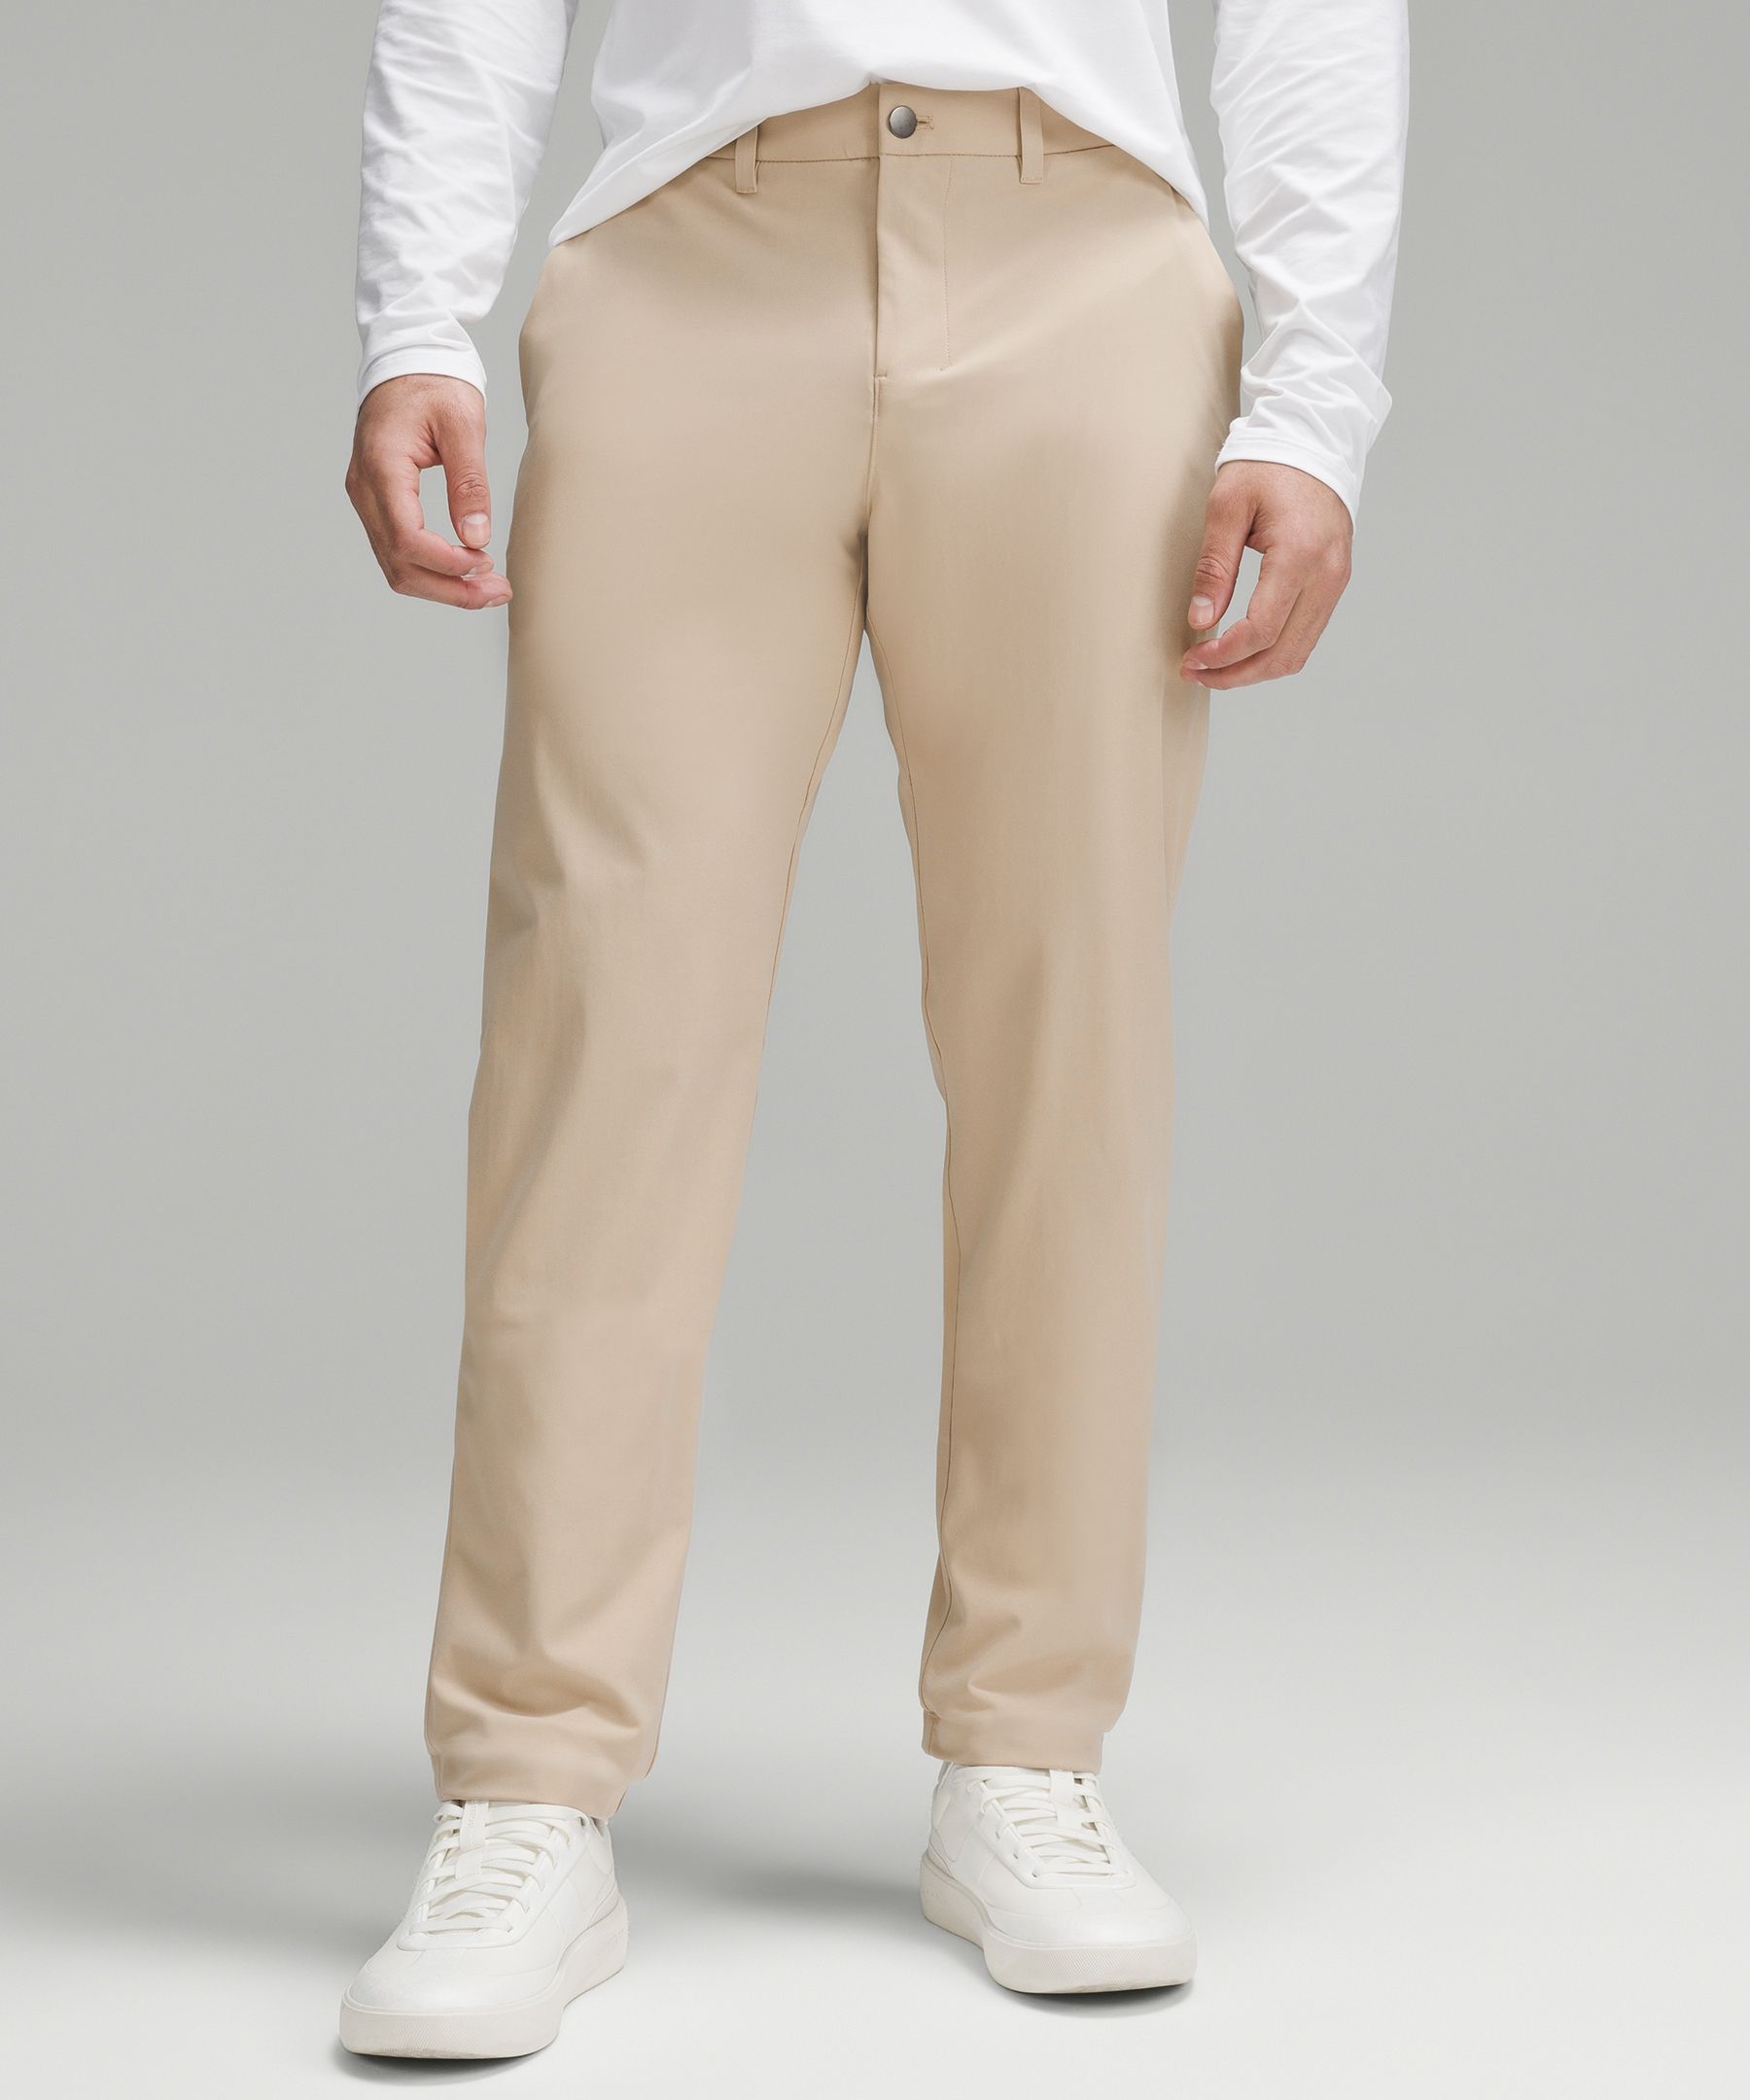 Lululemon Abc Classic-fit Trousers 30"l Warpstreme